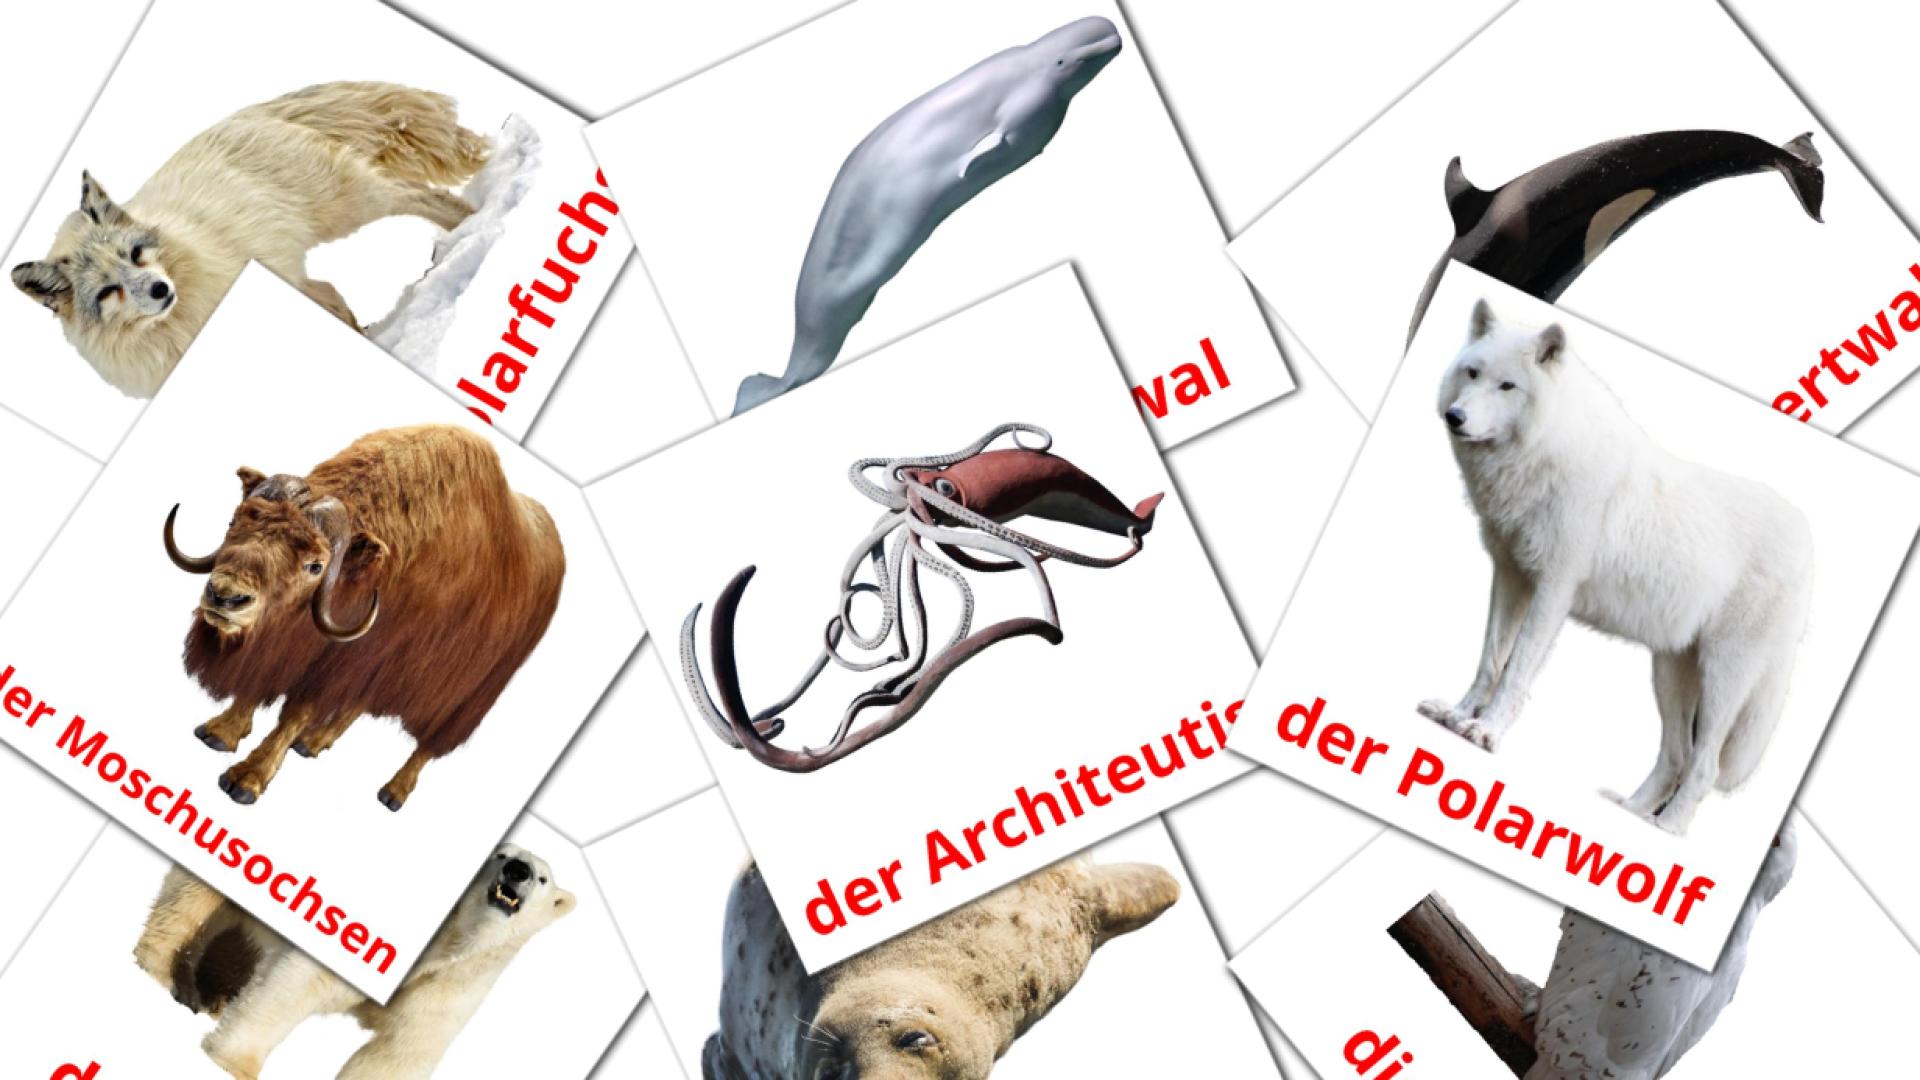 Tiere in der arktis flashcards